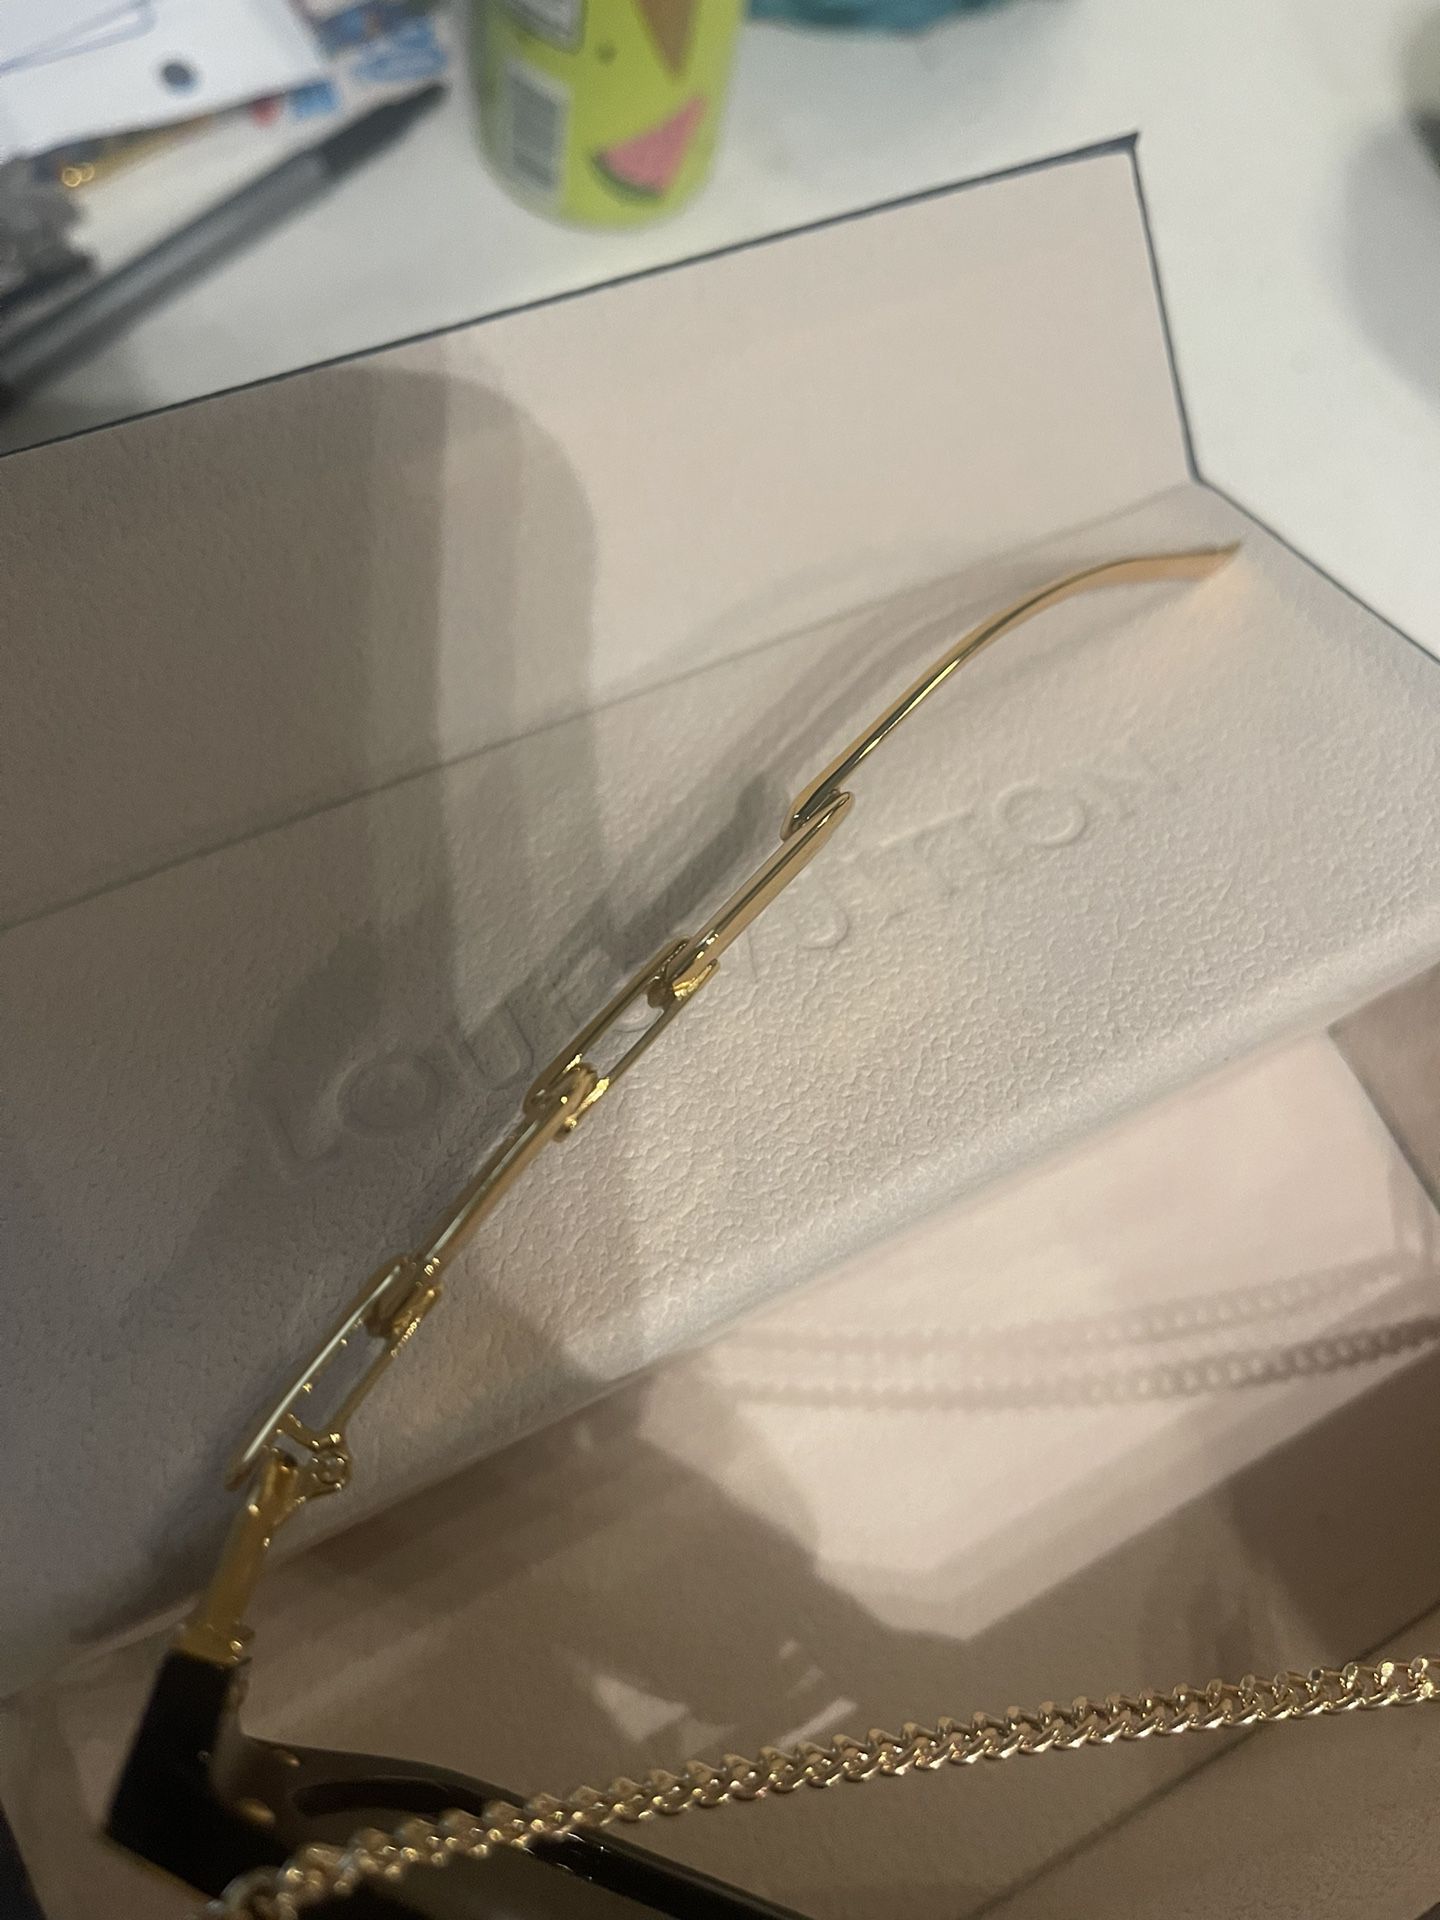 Claire_Paris - Paris Texas Louis Vuitton sunglasses.Available on  Kate&You website & app. Worldwild shipping. #louisvuittonsunglasses  #louisvuittonaddict #louisvuittonlovers #louisvuitton #withkateandyou  #personalshopperparis #louisvuittonstore